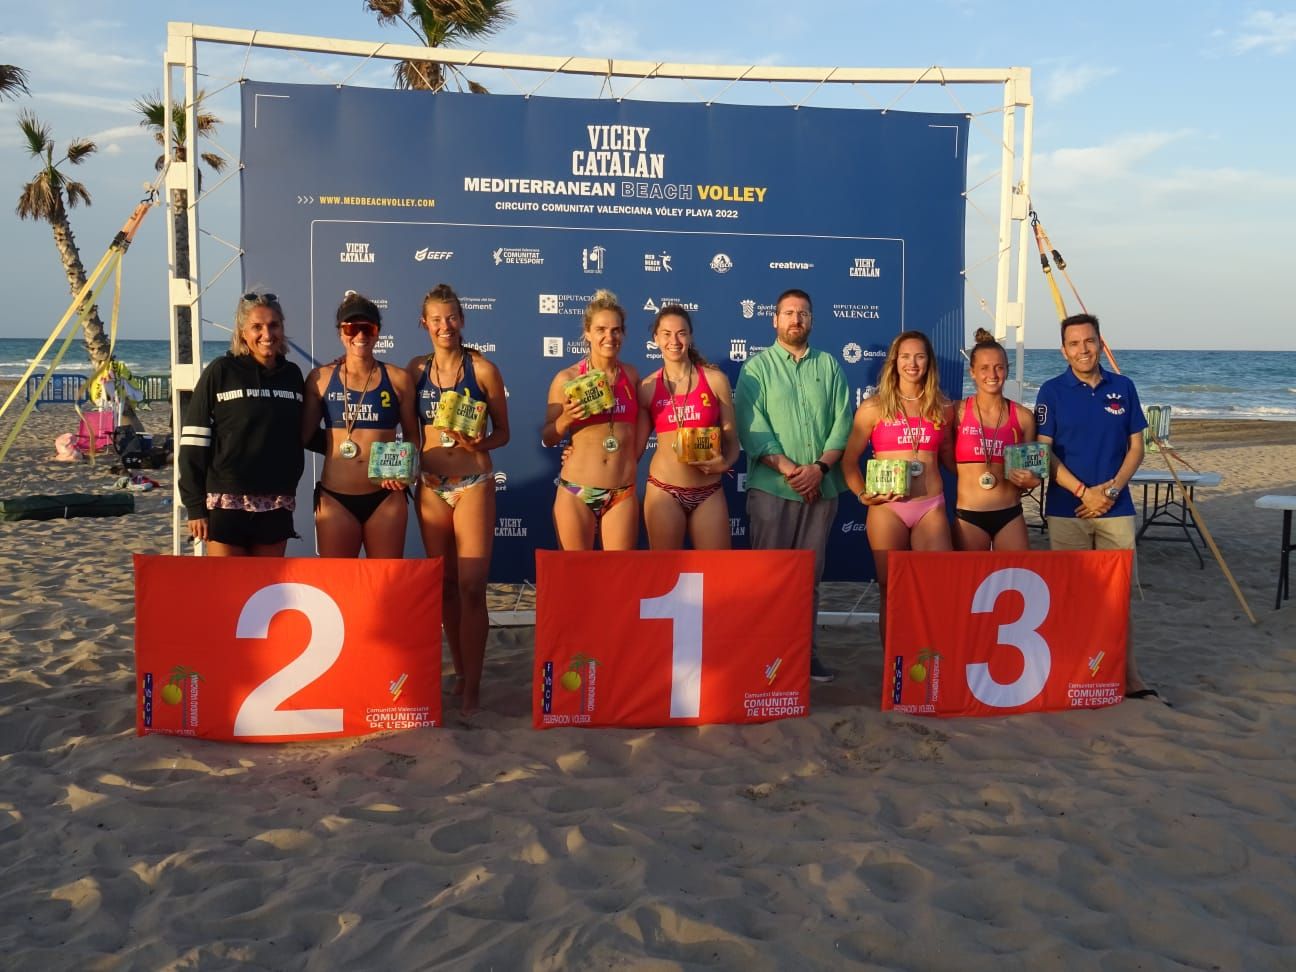 Segunda parada del Circuito 'Vichi Catalan' Mediterranean Beach Volley